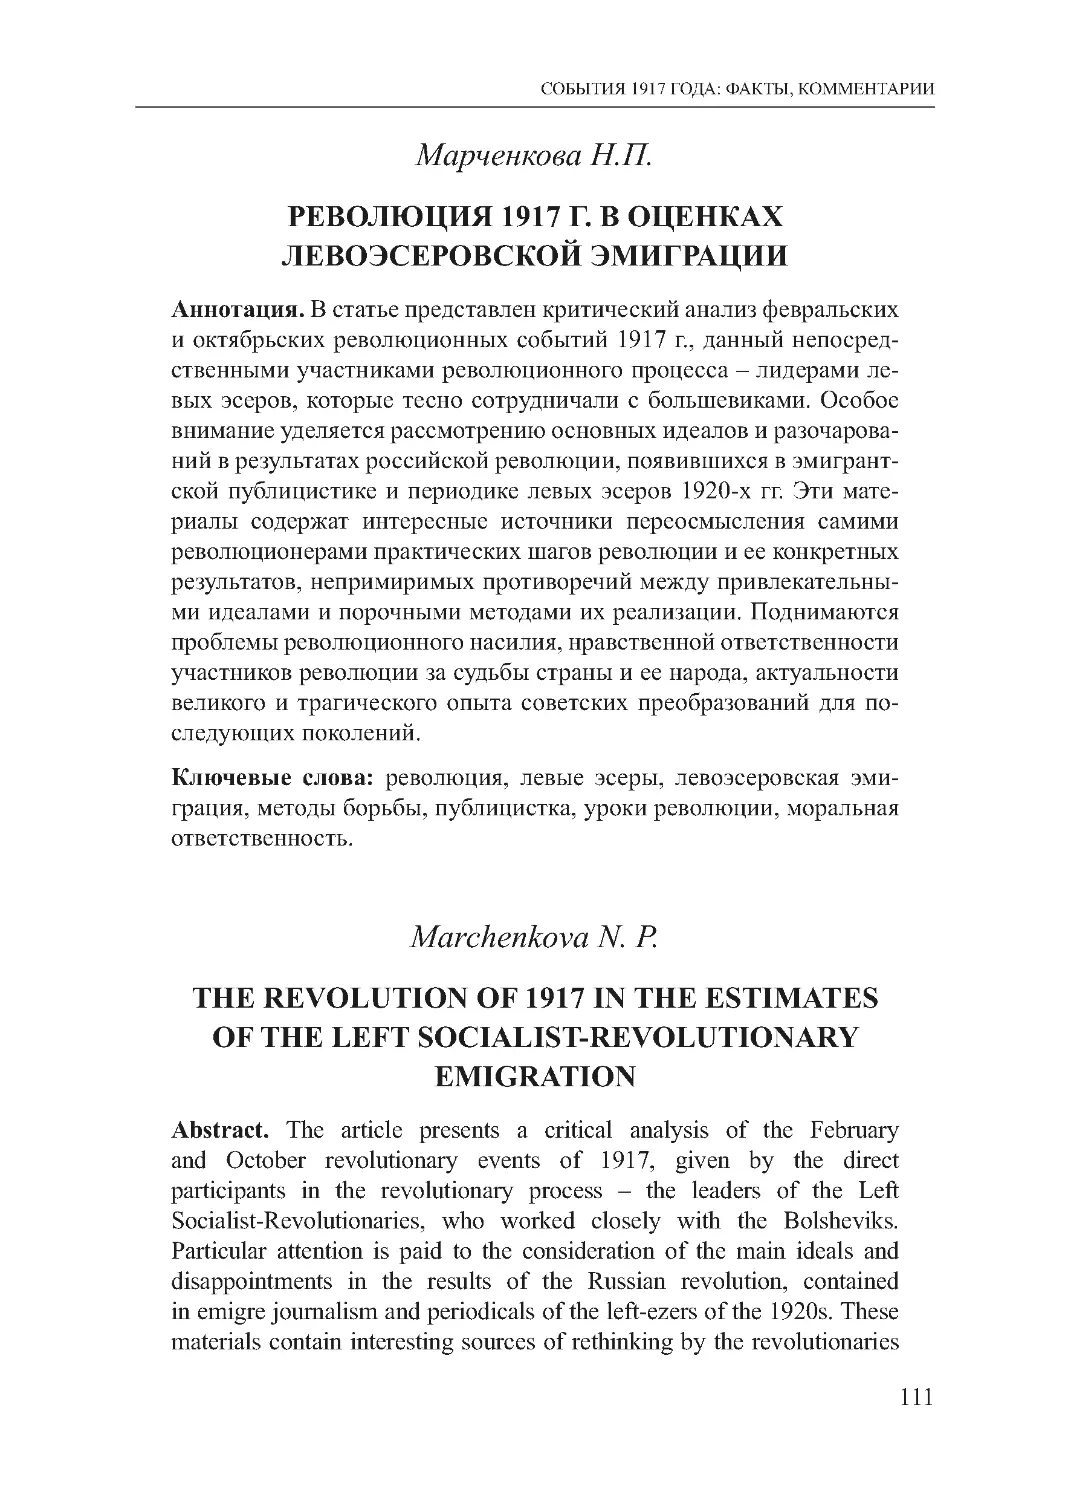 Марченкова Н.П. Революция 1917 г. в оценках левоэсеровской эмиграции